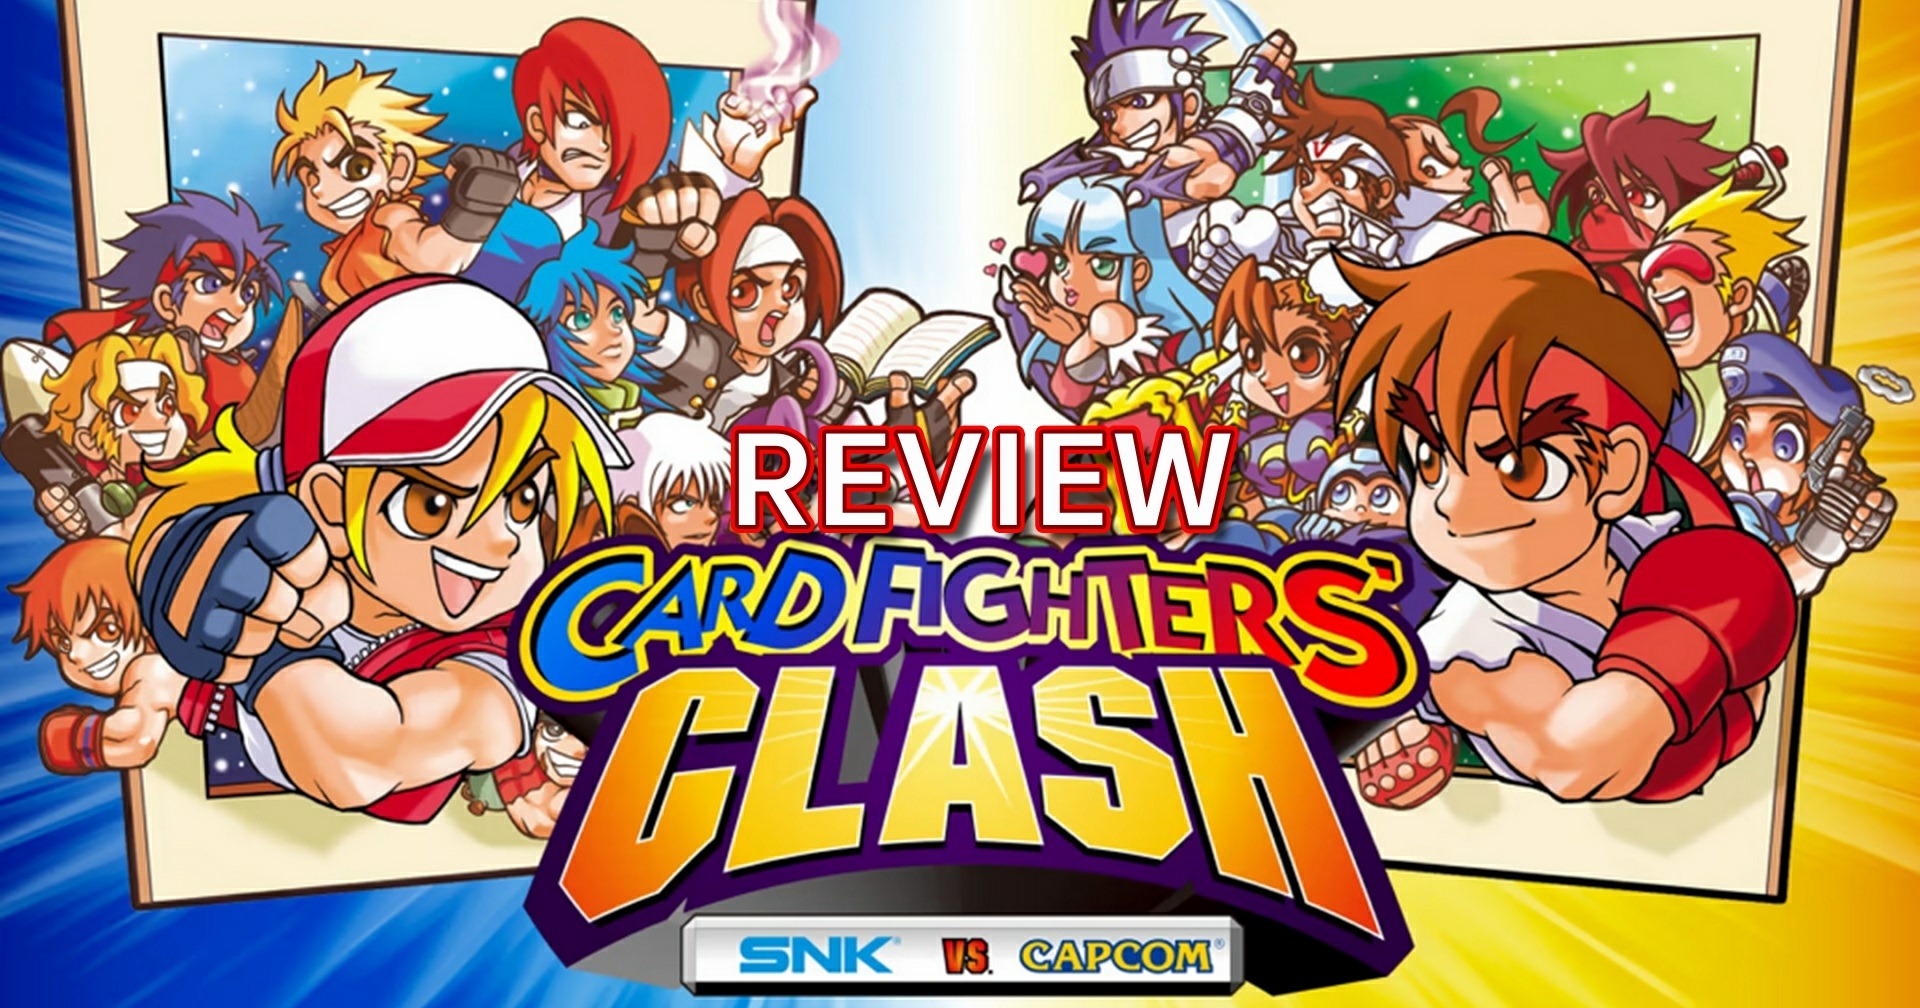 รีวิวเกม SNK VS. Capcom Card Fighters Clash เกมการ์ดจาก 2 ค่ายในตำนาน